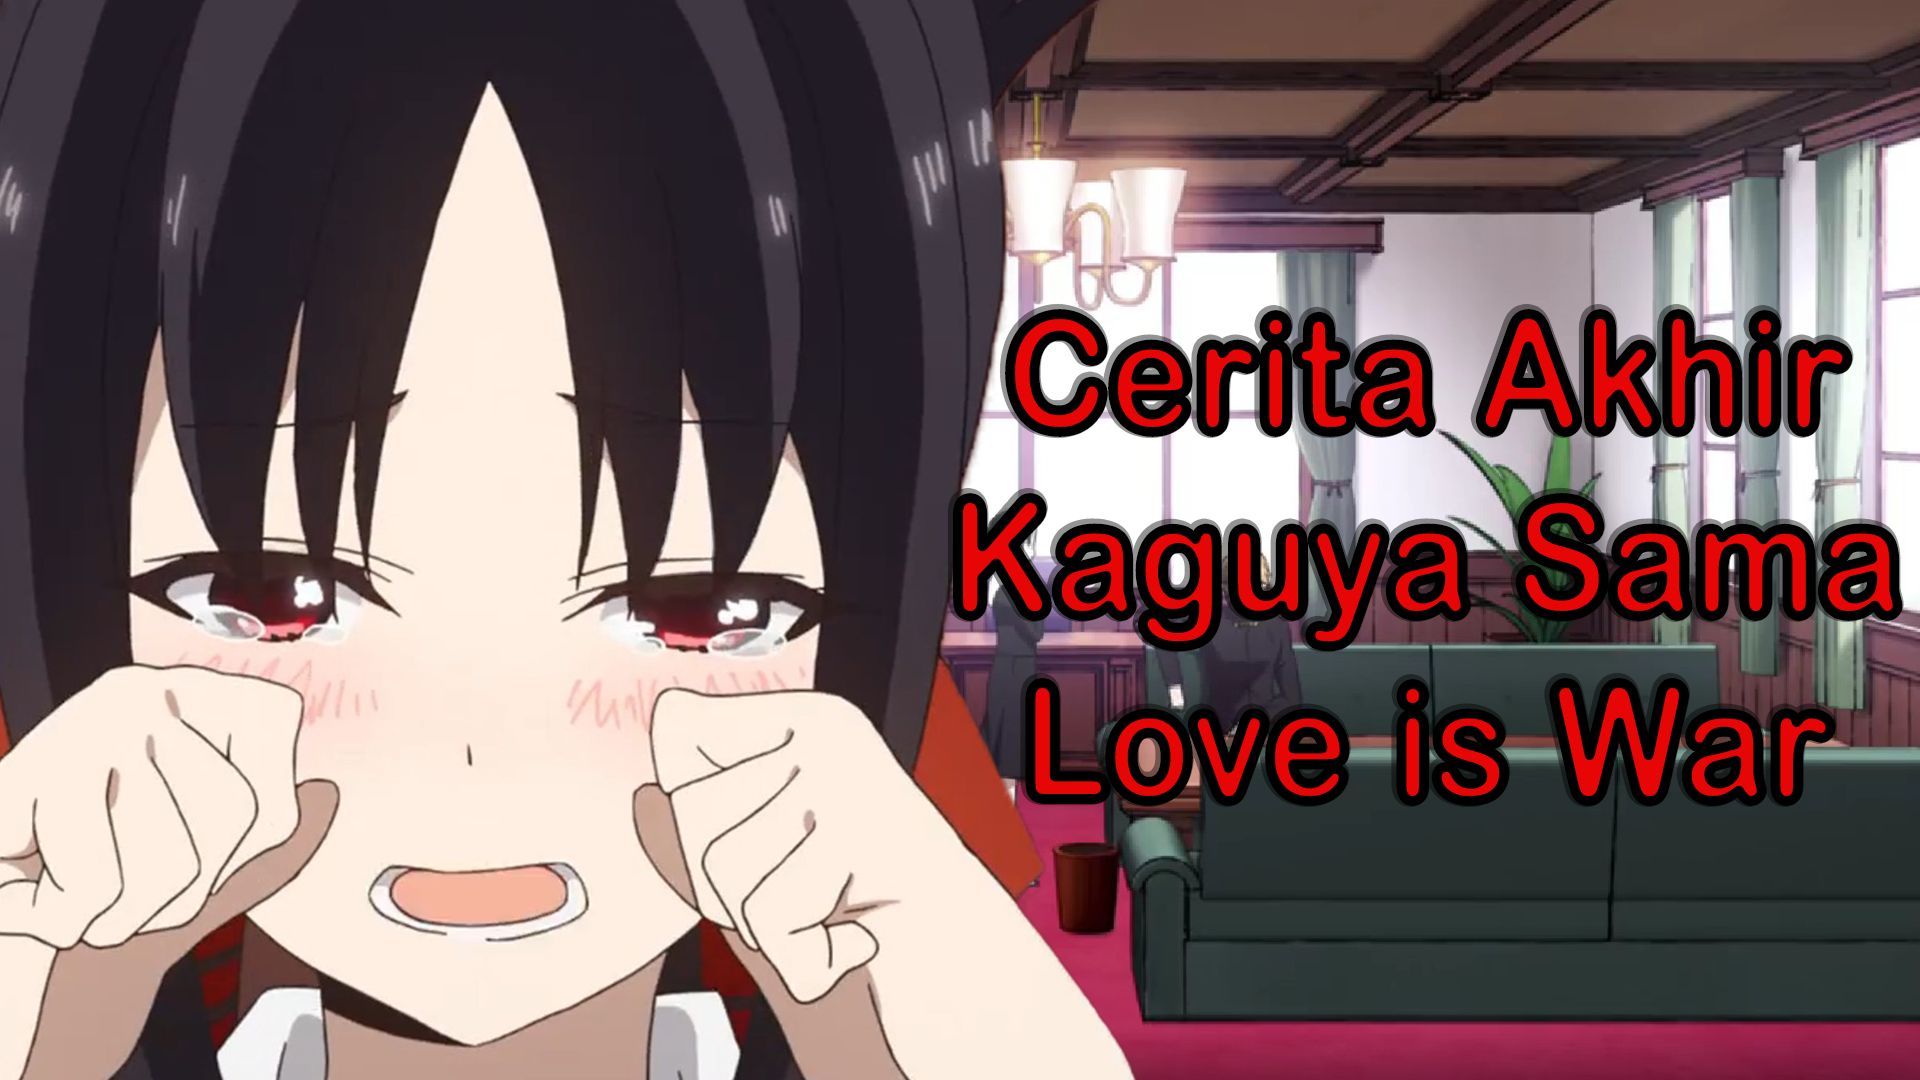 Kaguya-sama: Love Is War Creator Announces Retirement